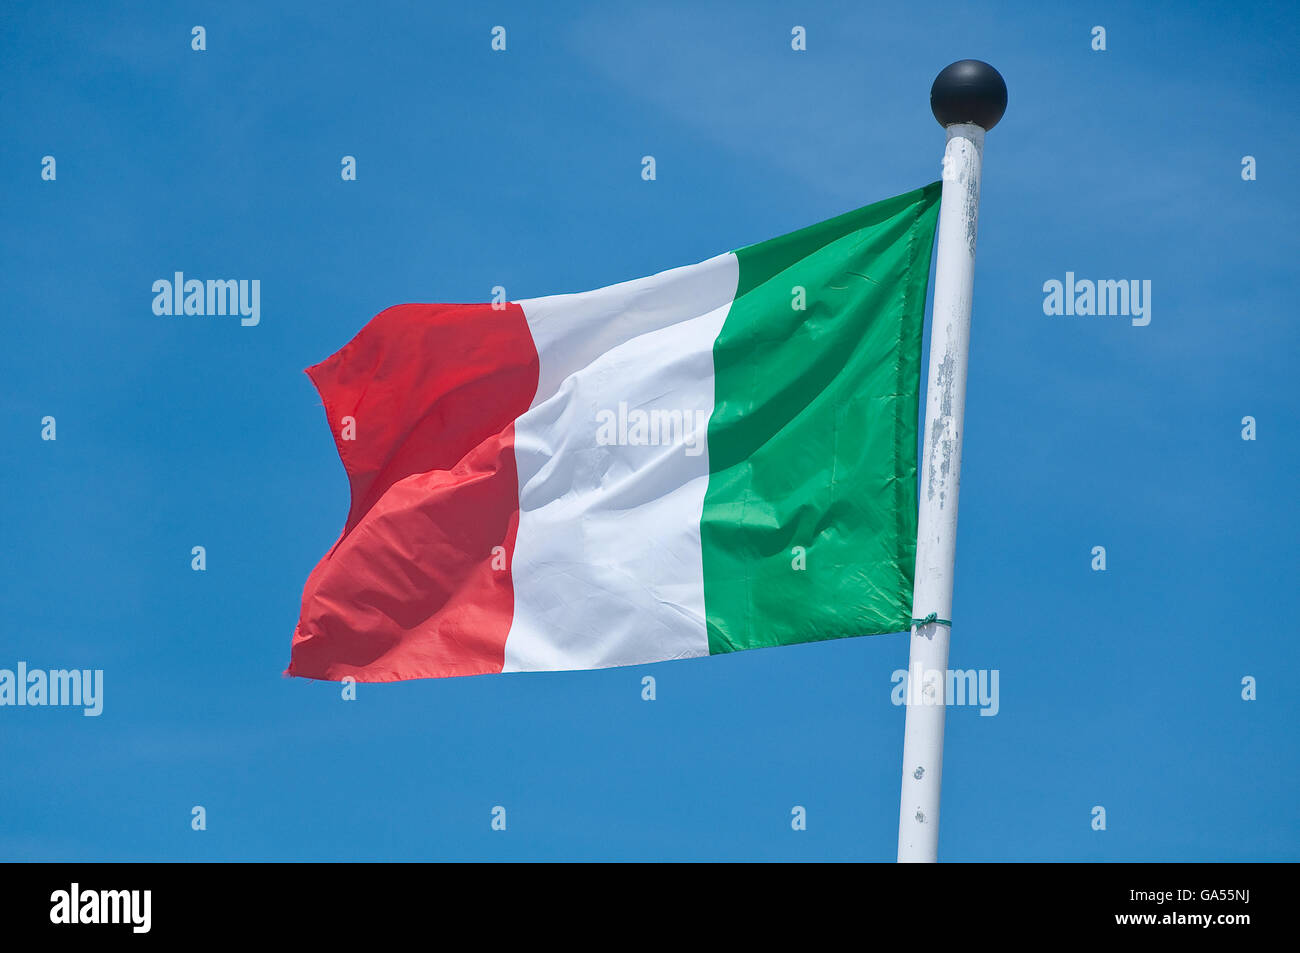 La bella Italia bandera ondeando en el cielo azul Foto de stock